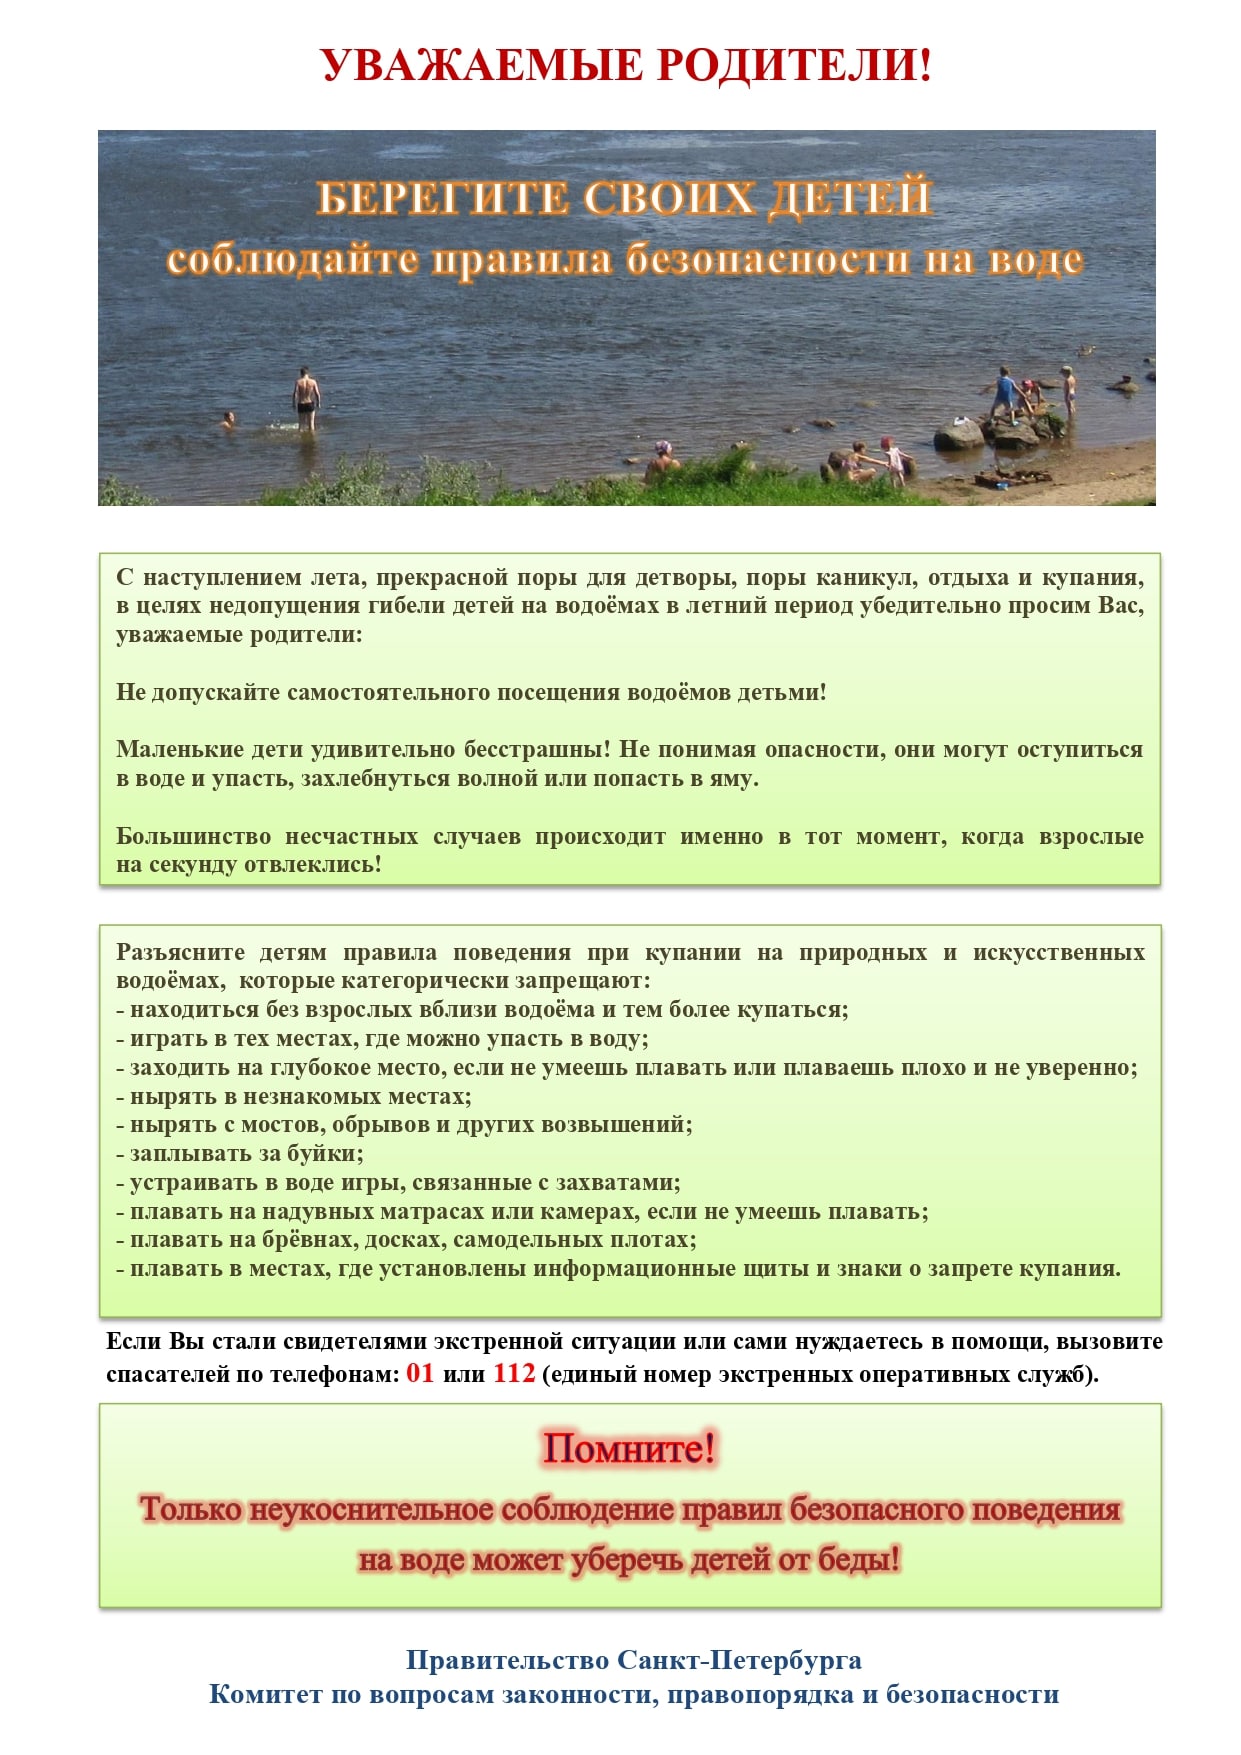 Памятка родителям по запрету купания в неотведенных местах 2021 page 0001 min